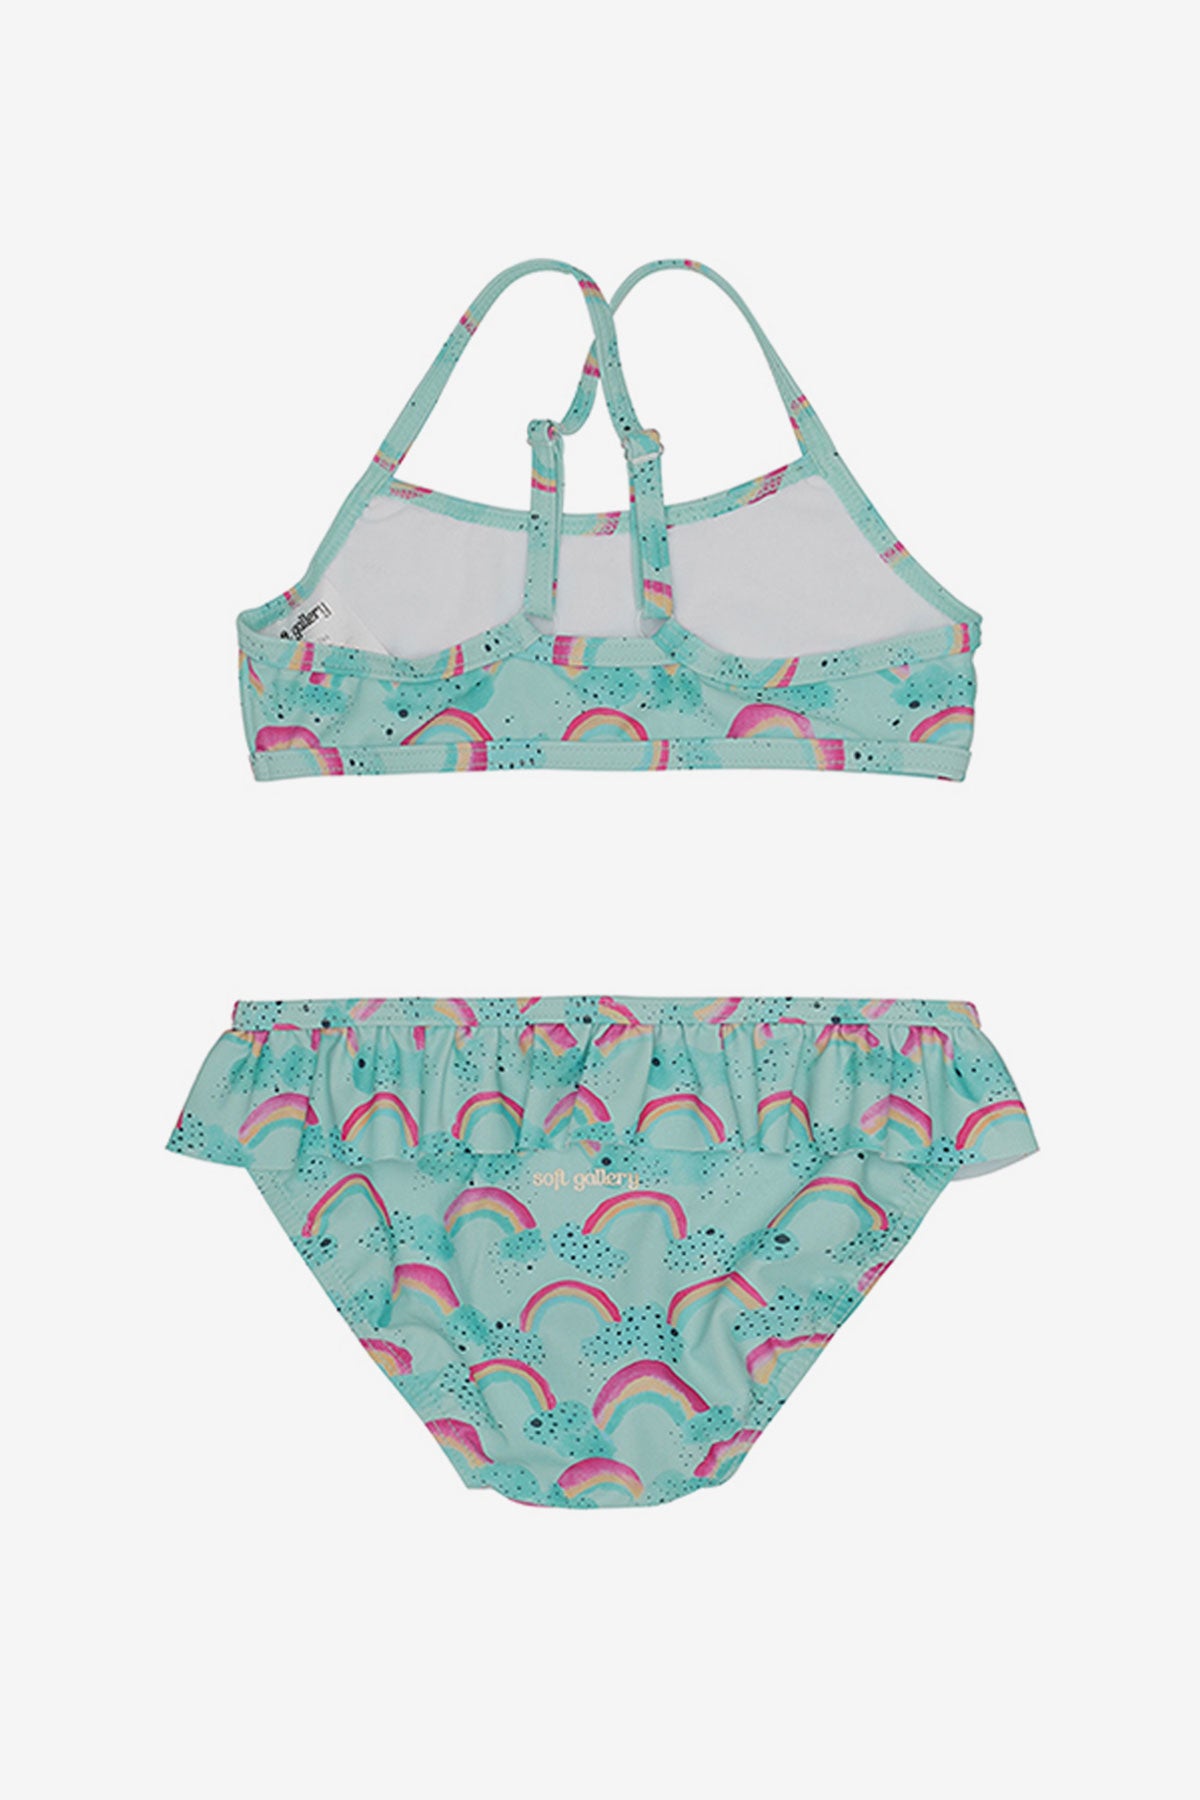 Soft Gallery Jewel Rainbow Girls Swim Set (Size 14 left) – Mini Ruby